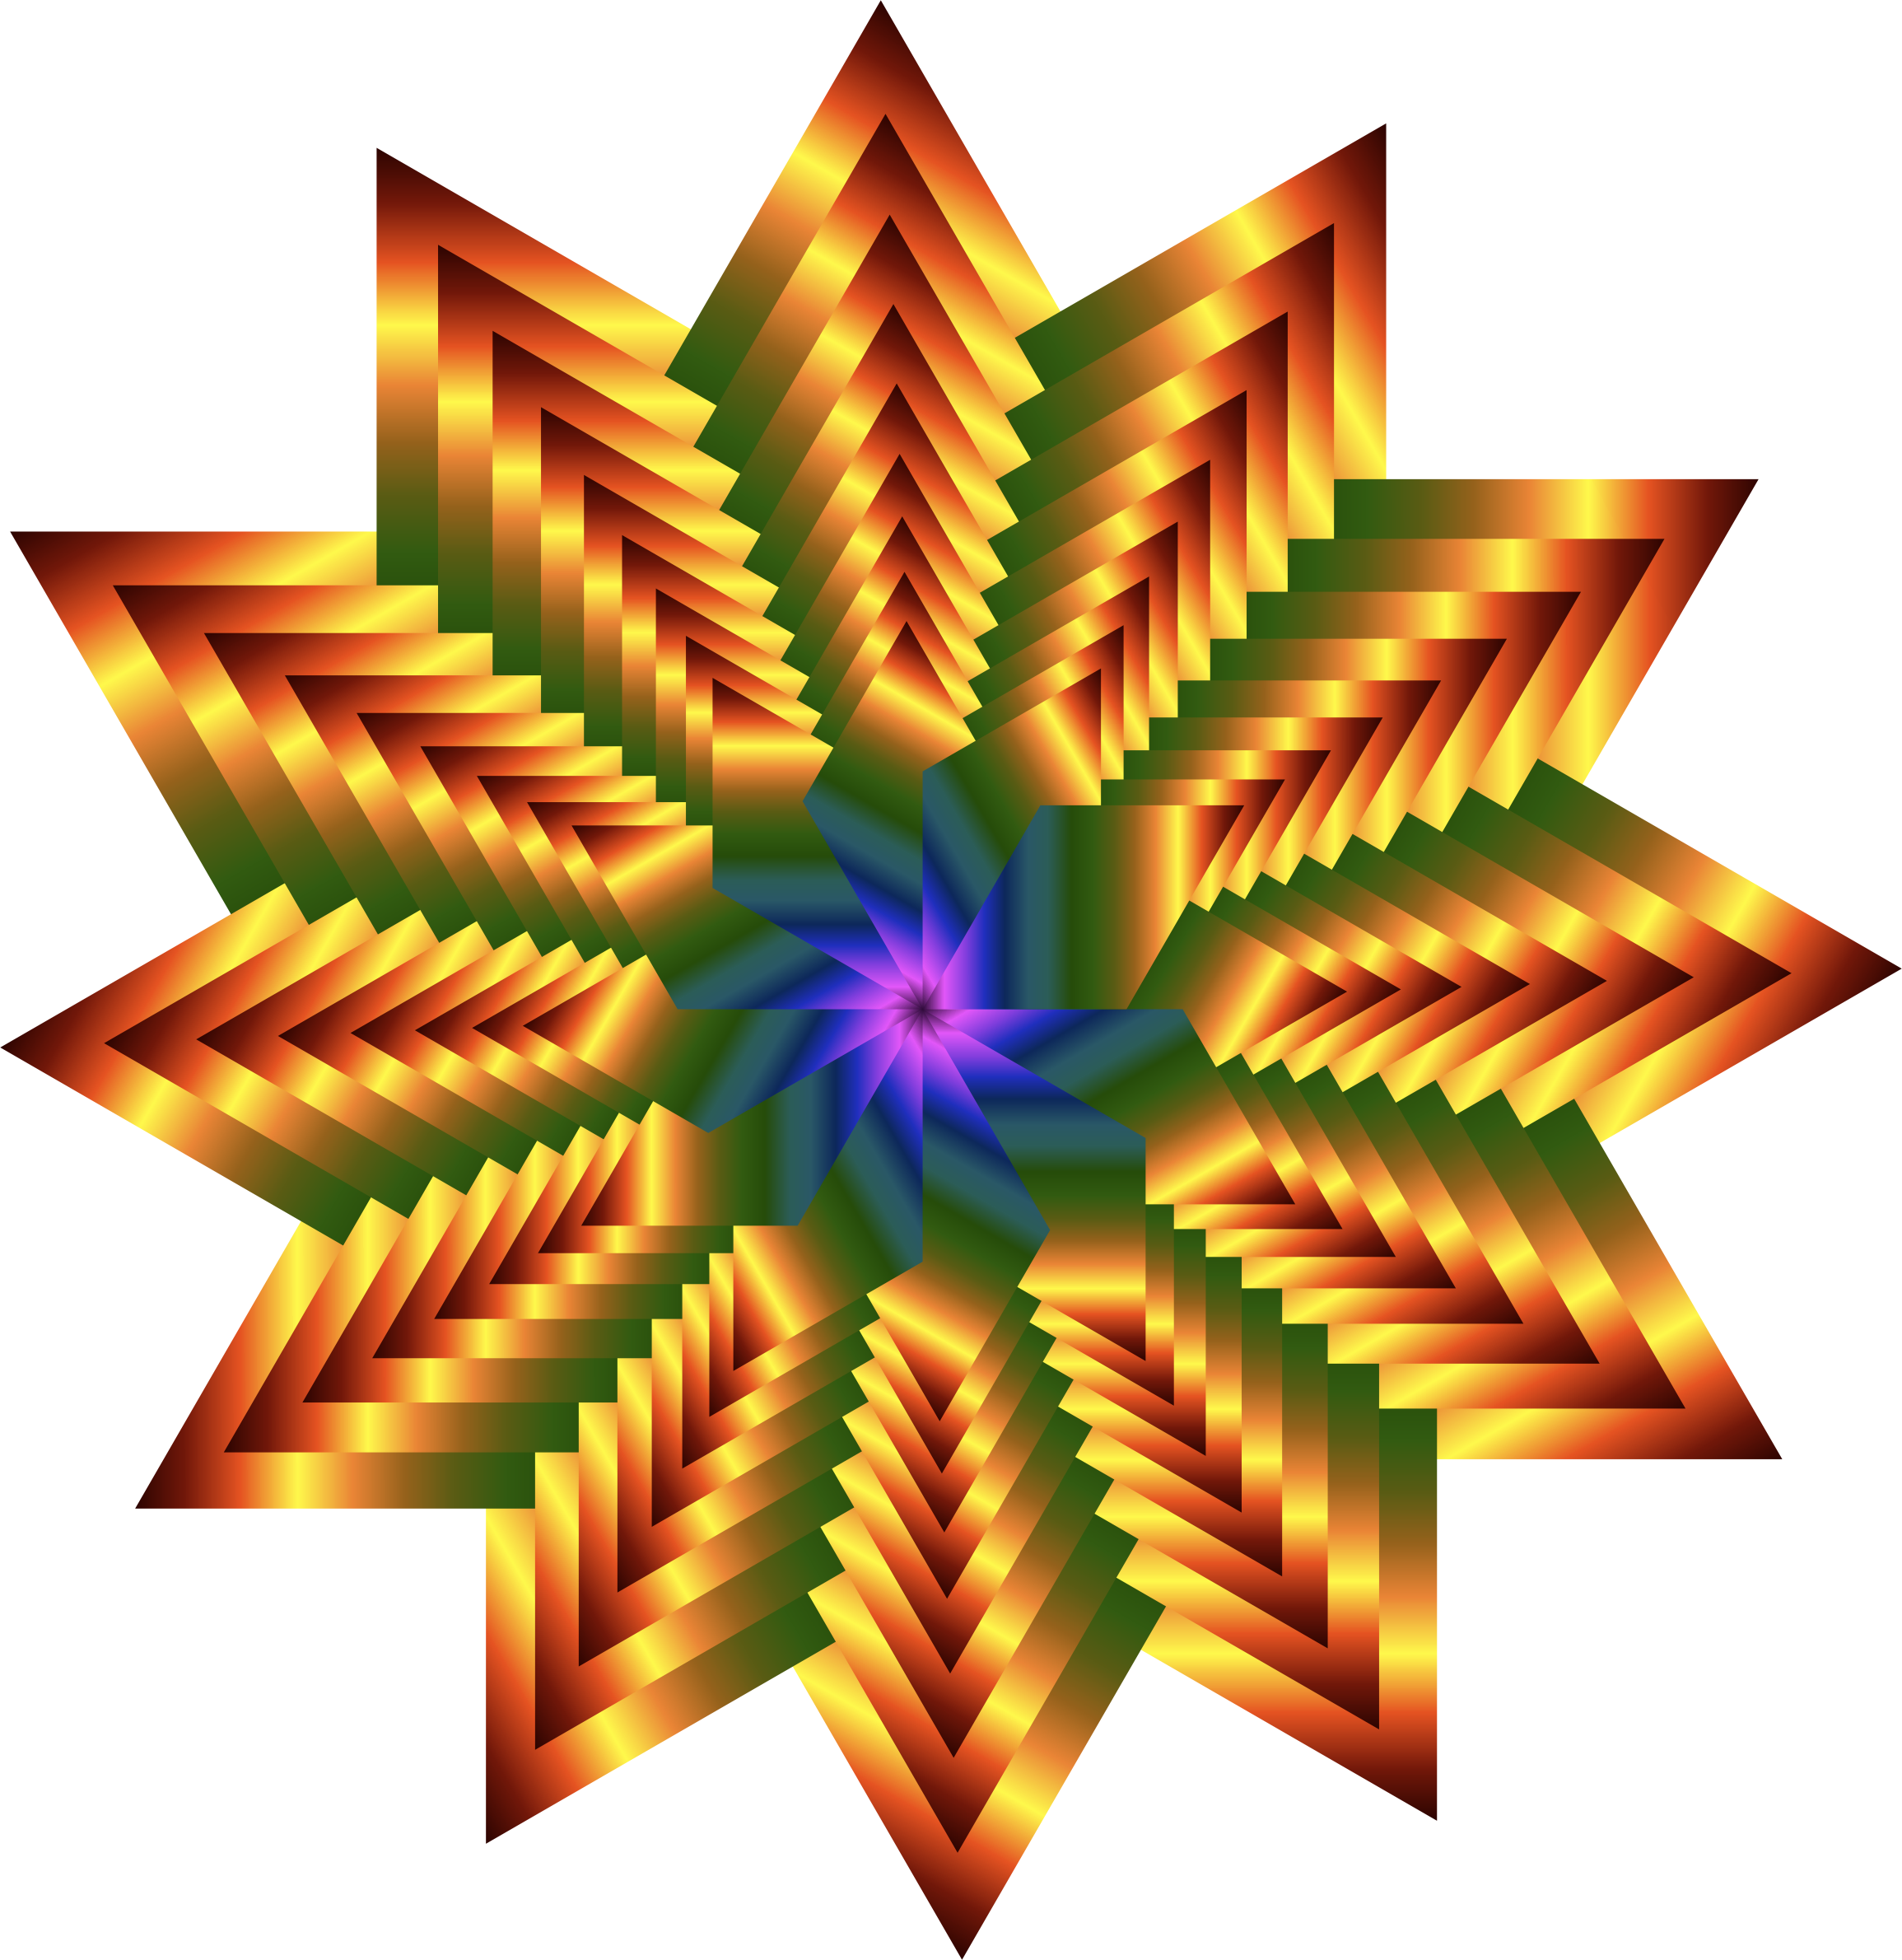 Vortex Star - Vortex Star (2310x2380)